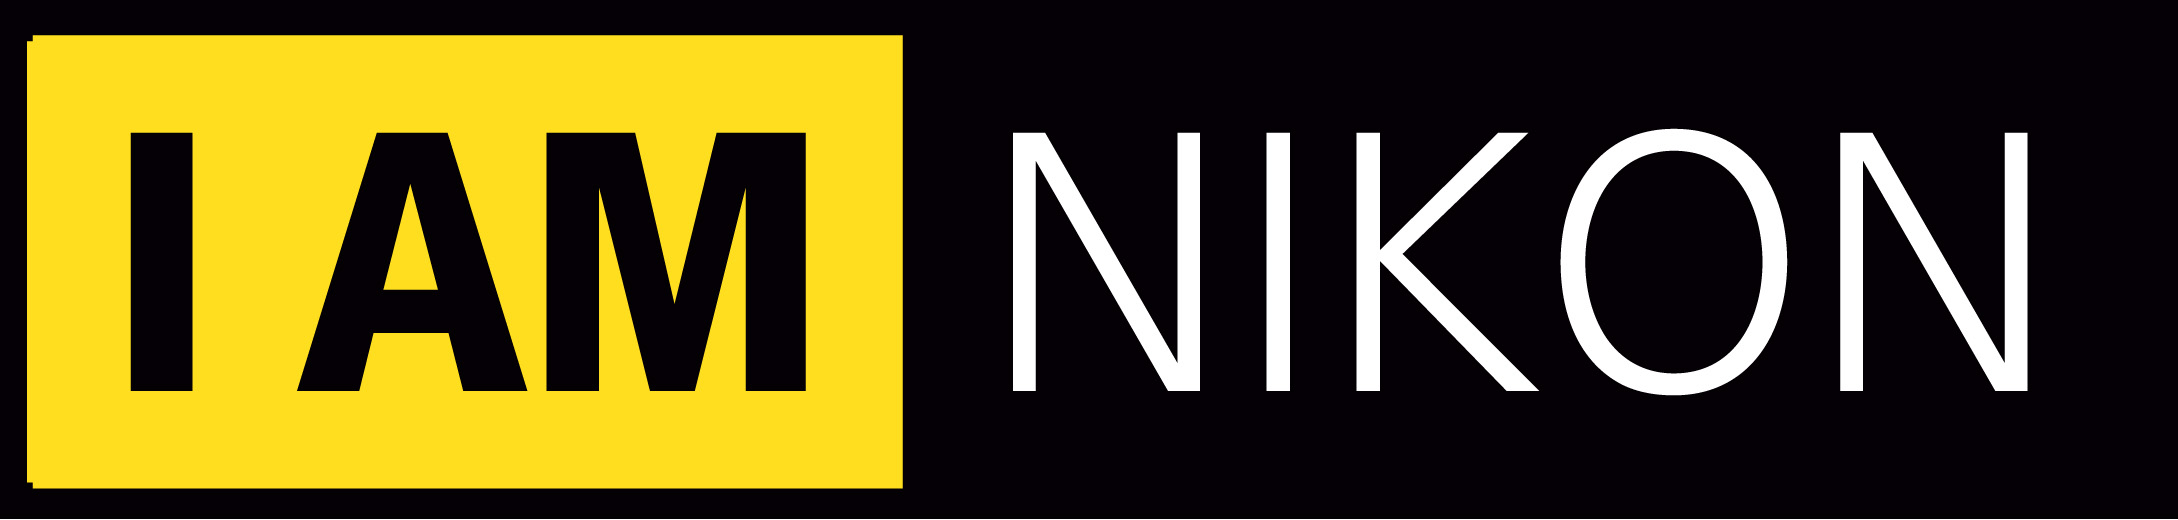 I AM NIKON logo